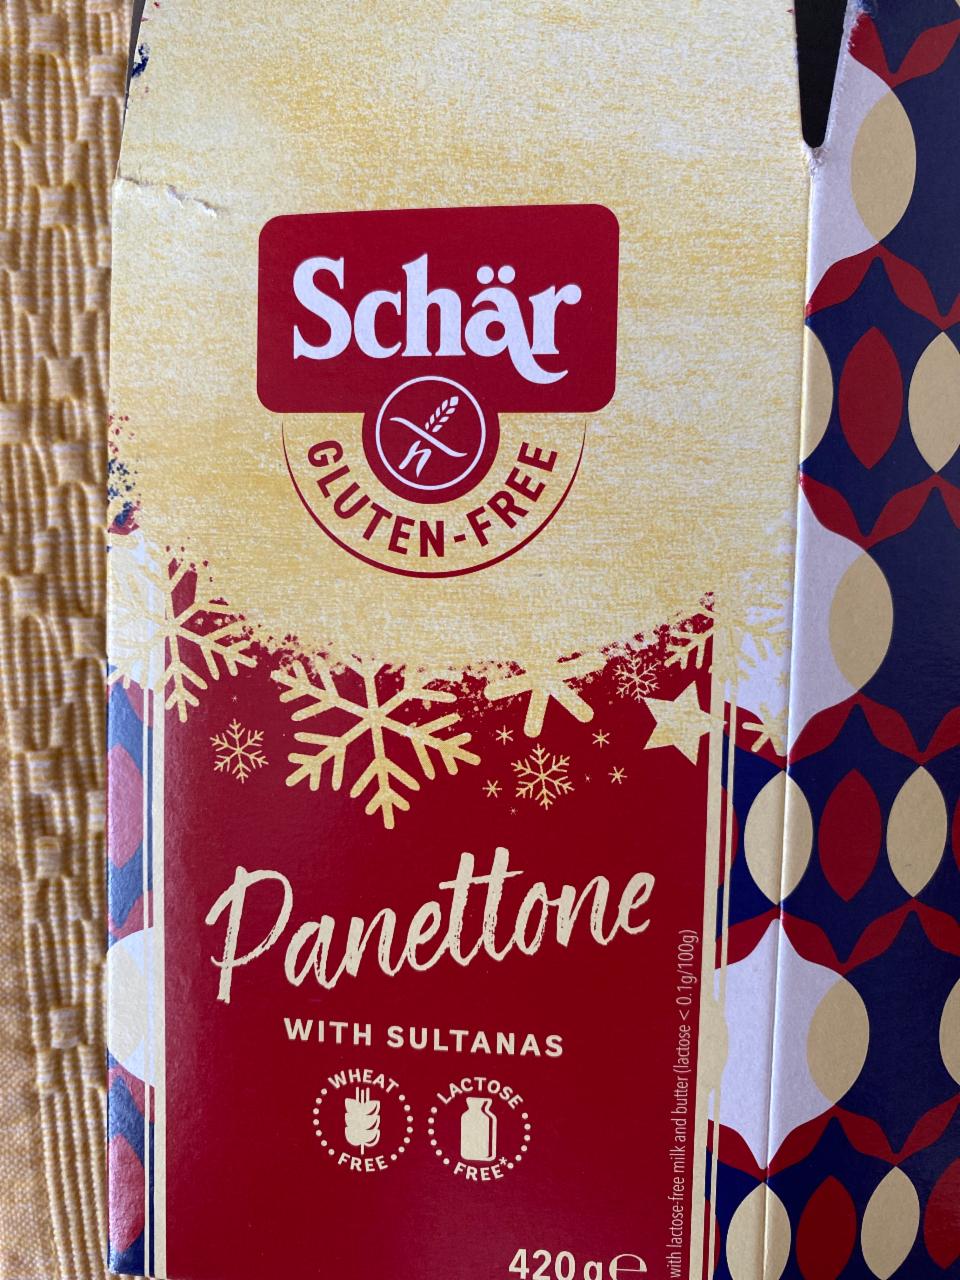 Fotografie - Panettone with Sultanas Gluten Free Schär